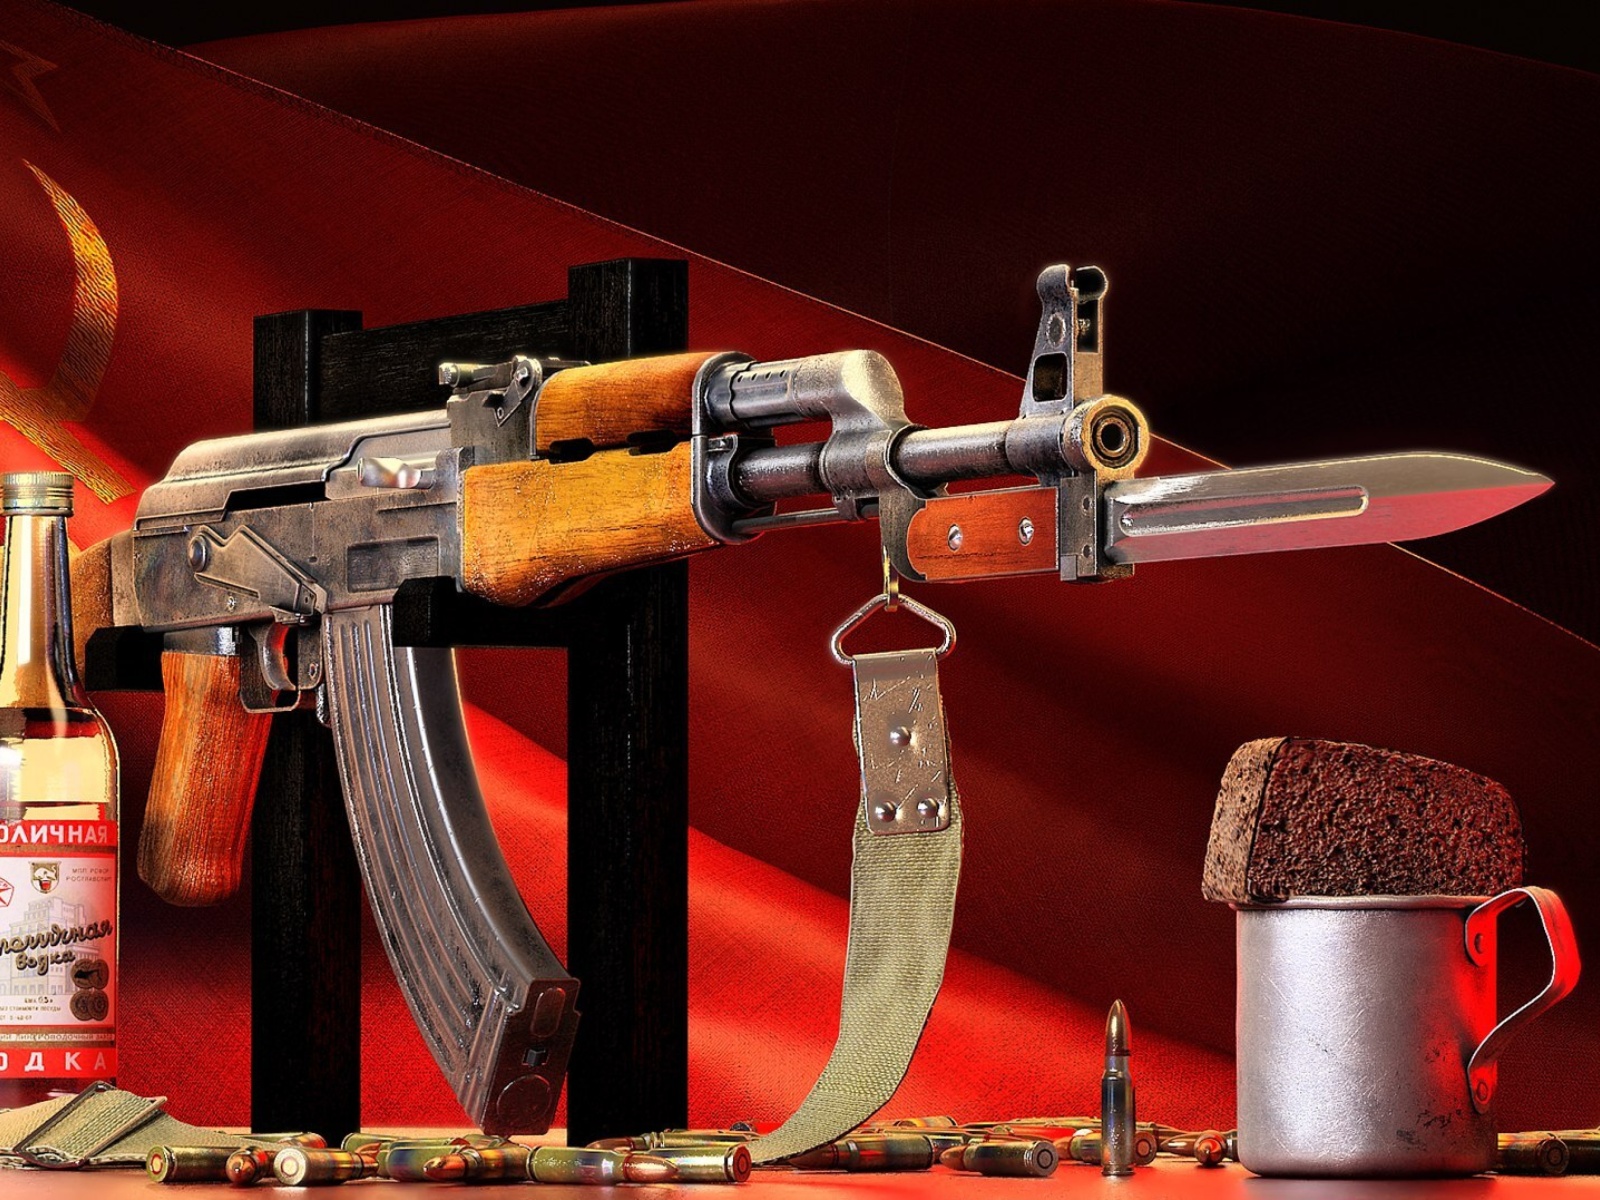 Ak 47 assault rifle and vodka screenshot #1 1600x1200